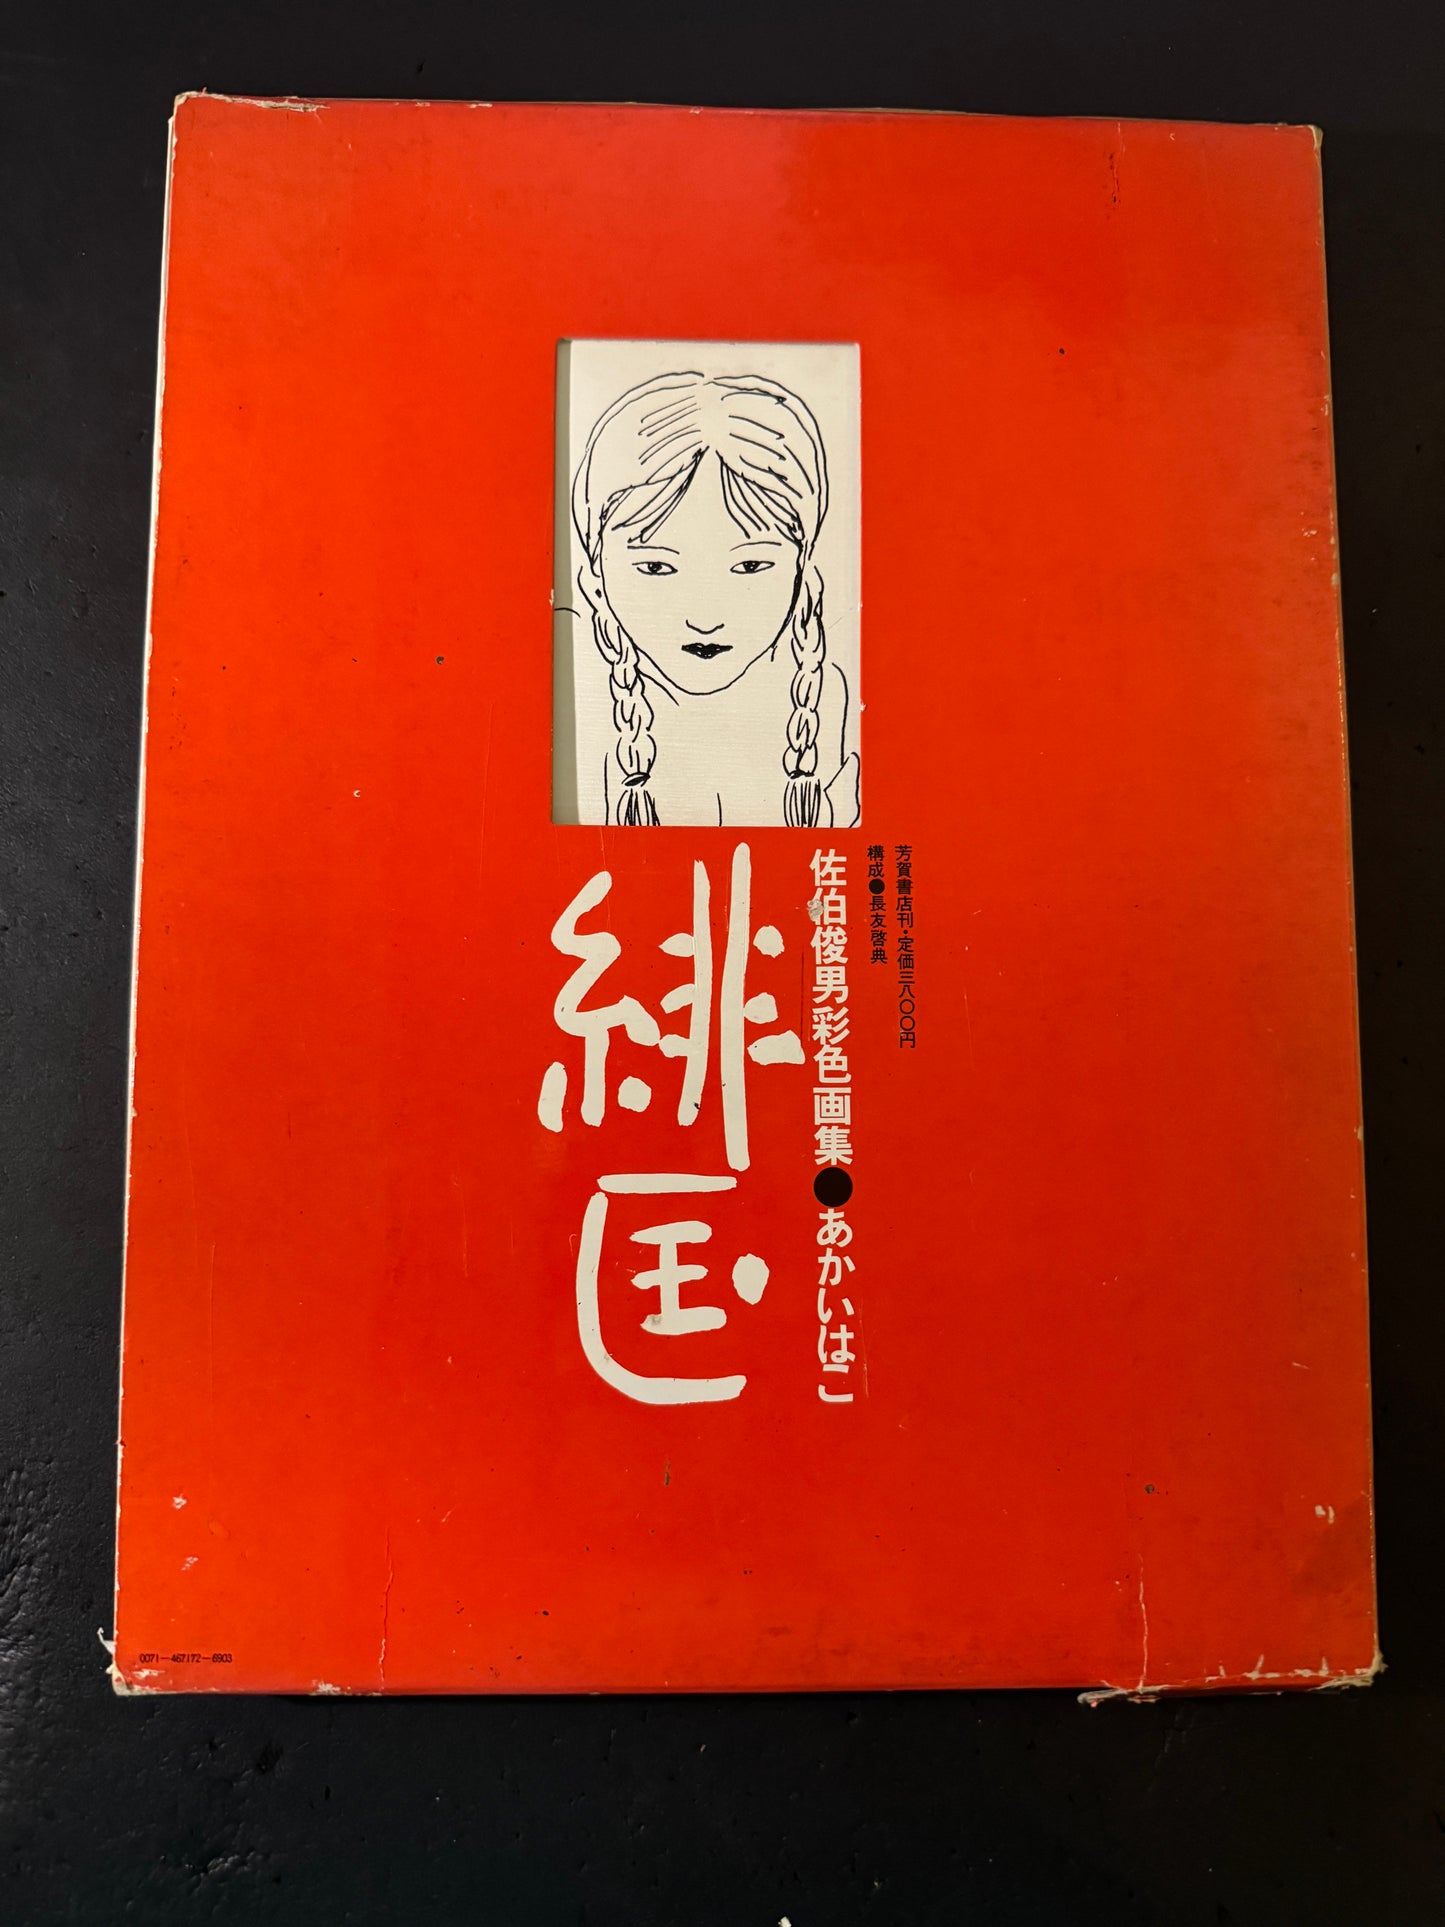 AKAI HAKO (RED BOX)